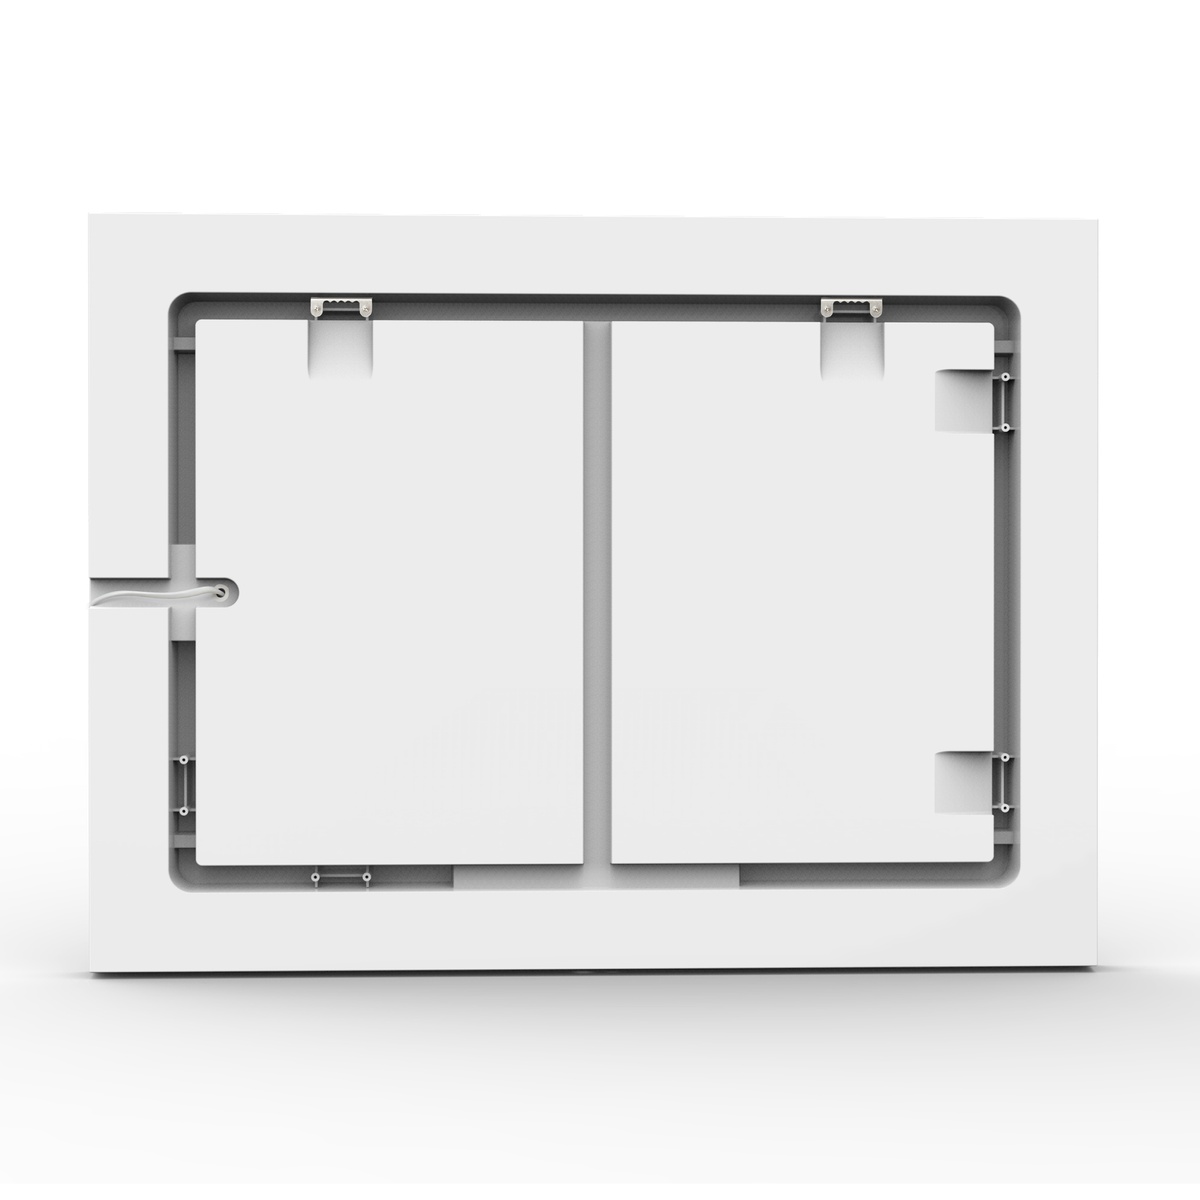 Зеркало прямоугольное для ванной VOLLE VOLLE 60x80см c подсветкой сенсорное включение антизапотевание 16-14-800